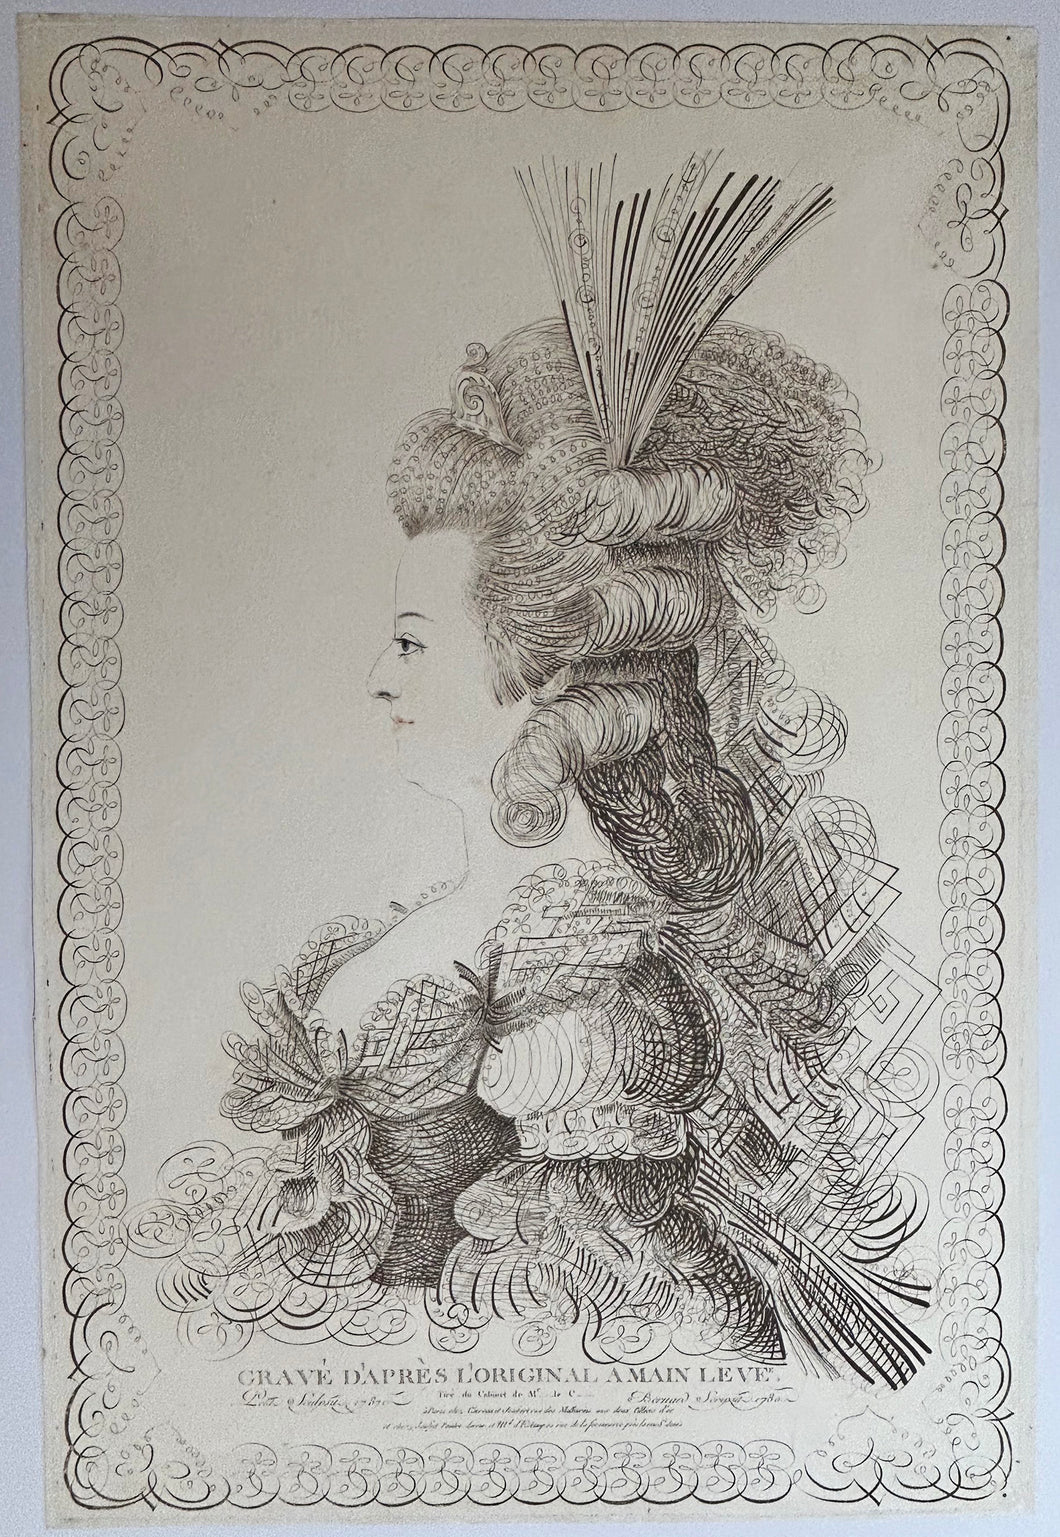 Portrait de Marie Antoinette (1755†1793), Reine de France; gravé d'après l'original à la main levée.  1787.